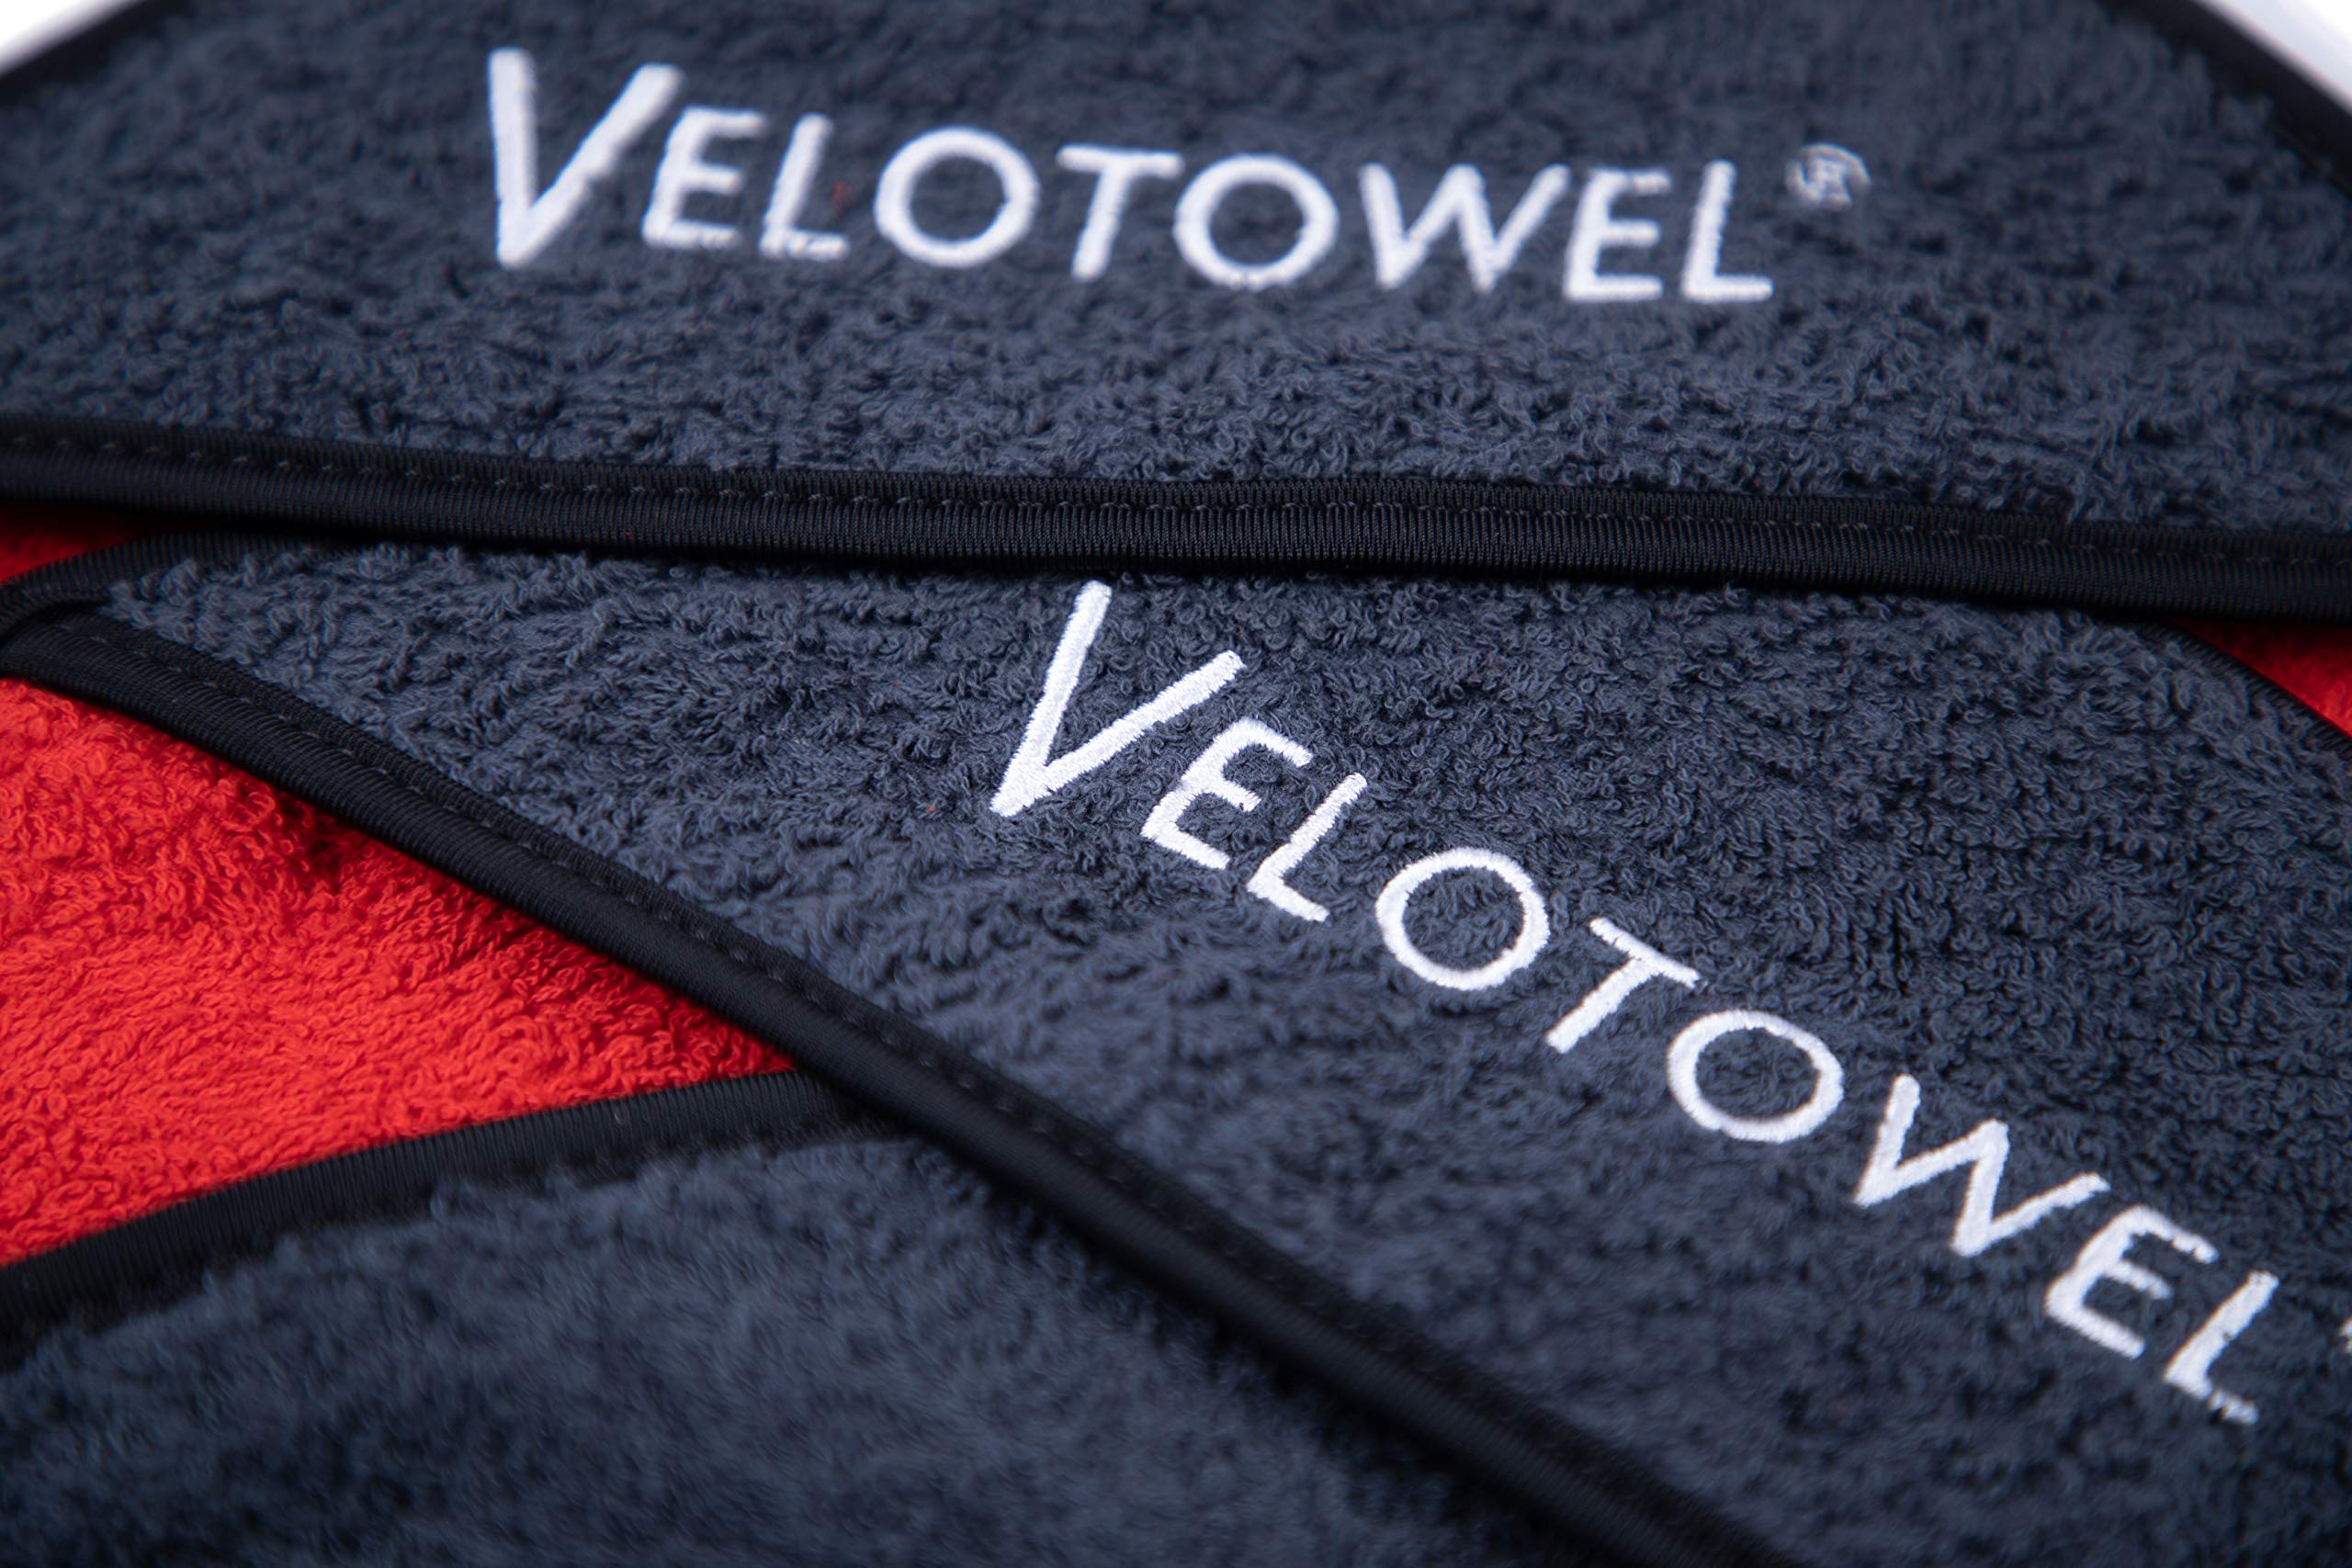 Velotowel - AeroWrap Classic - Compatible with Original Peloton Indoor Bike